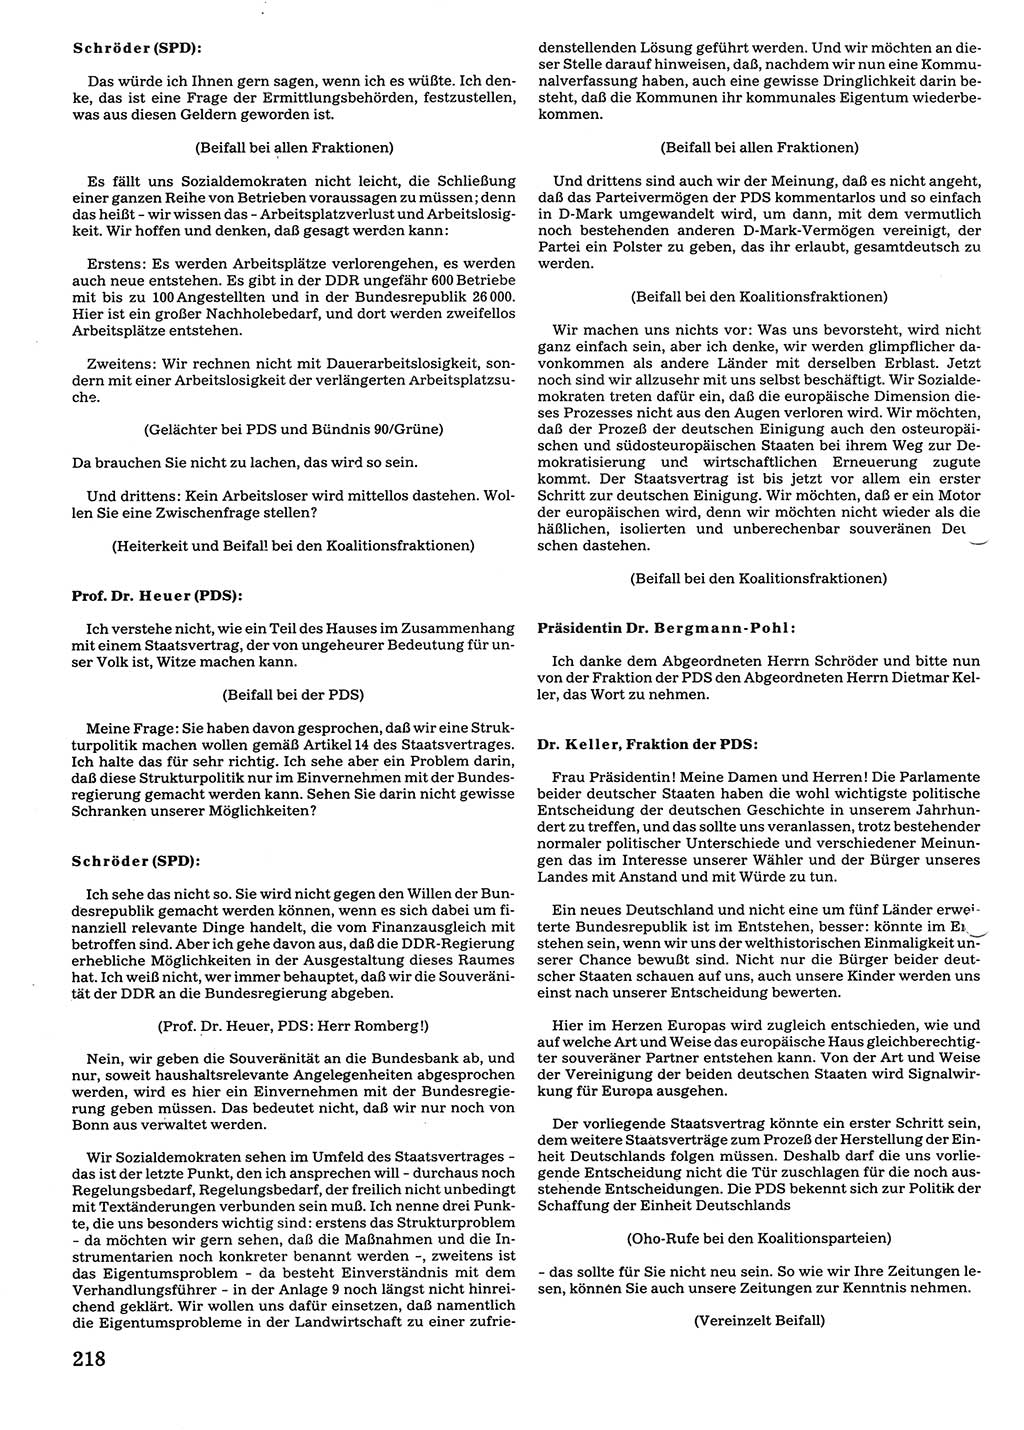 Tagungen der Volkskammer (VK) der Deutschen Demokratischen Republik (DDR), 10. Wahlperiode 1990, Seite 218 (VK. DDR 10. WP. 1990, Prot. Tg. 1-38, 5.4.-2.10.1990, S. 218)